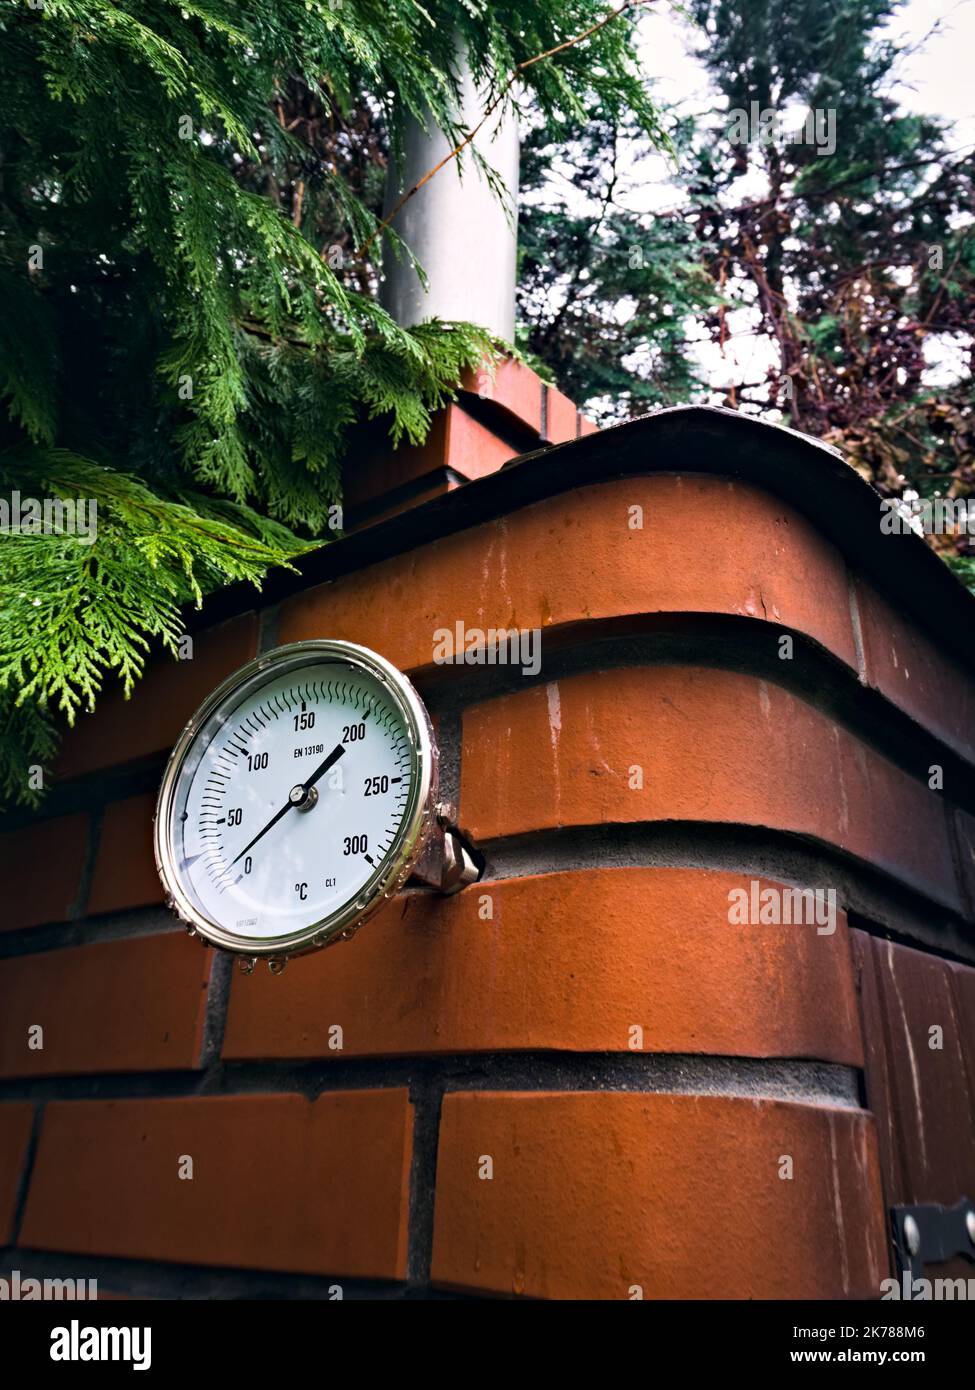 Fumoir de jardin avec un thermomètre installé pour contrôler la température pendant le tabagisme des viandes séchées Banque D'Images